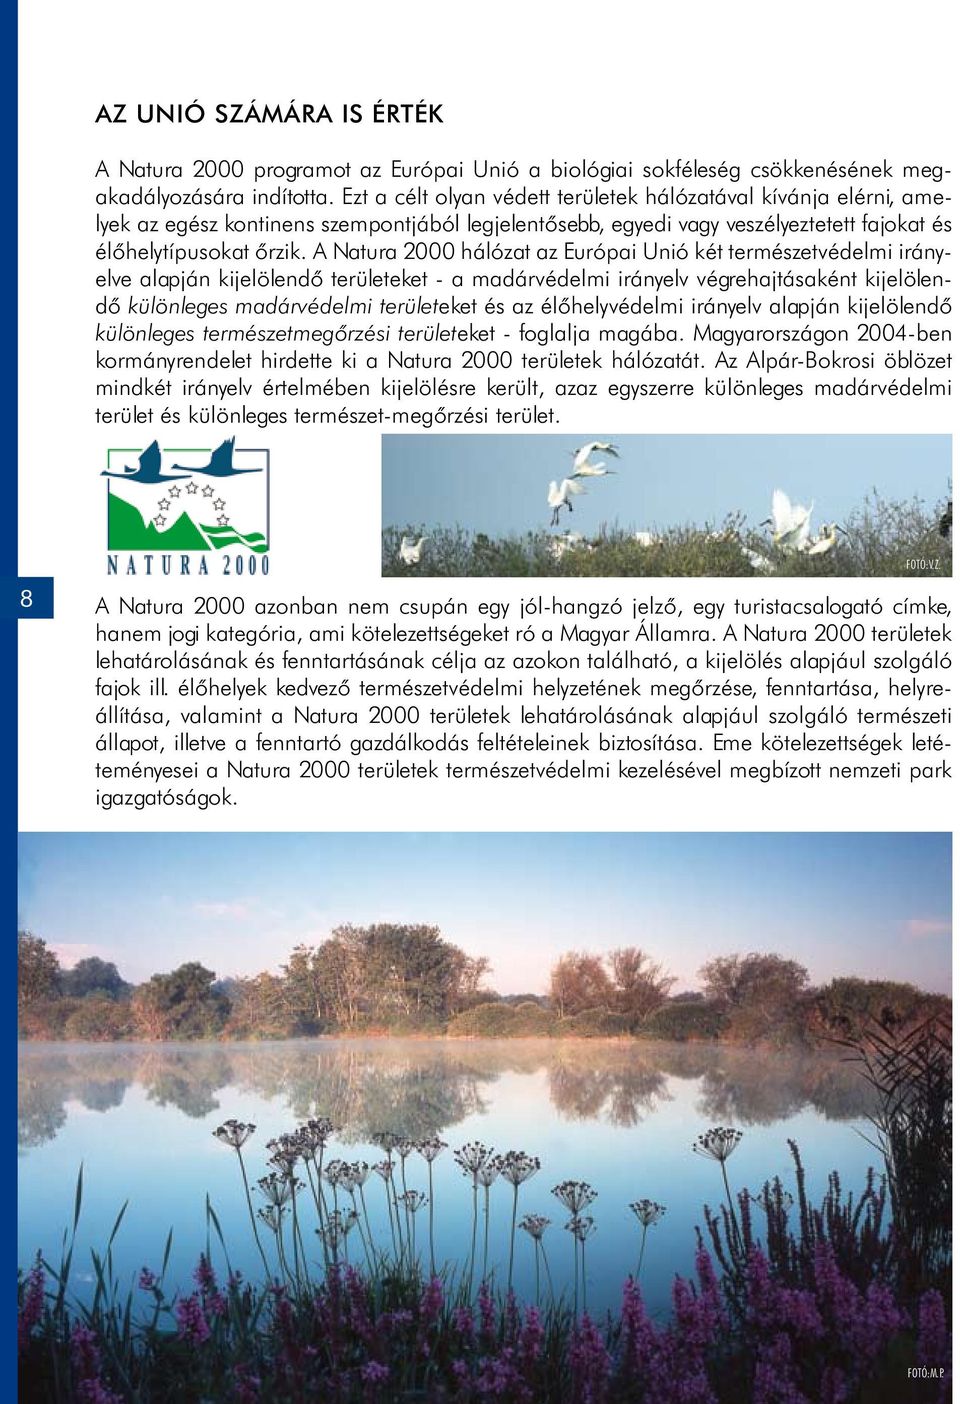 A Natura 2000 hálózat az Európai Unió két természetvédelmi irányelve alapján kijelölendő területeket - a madárvédelmi irányelv végrehajtásaként kijelölendő különleges madárvédelmi területeket és az